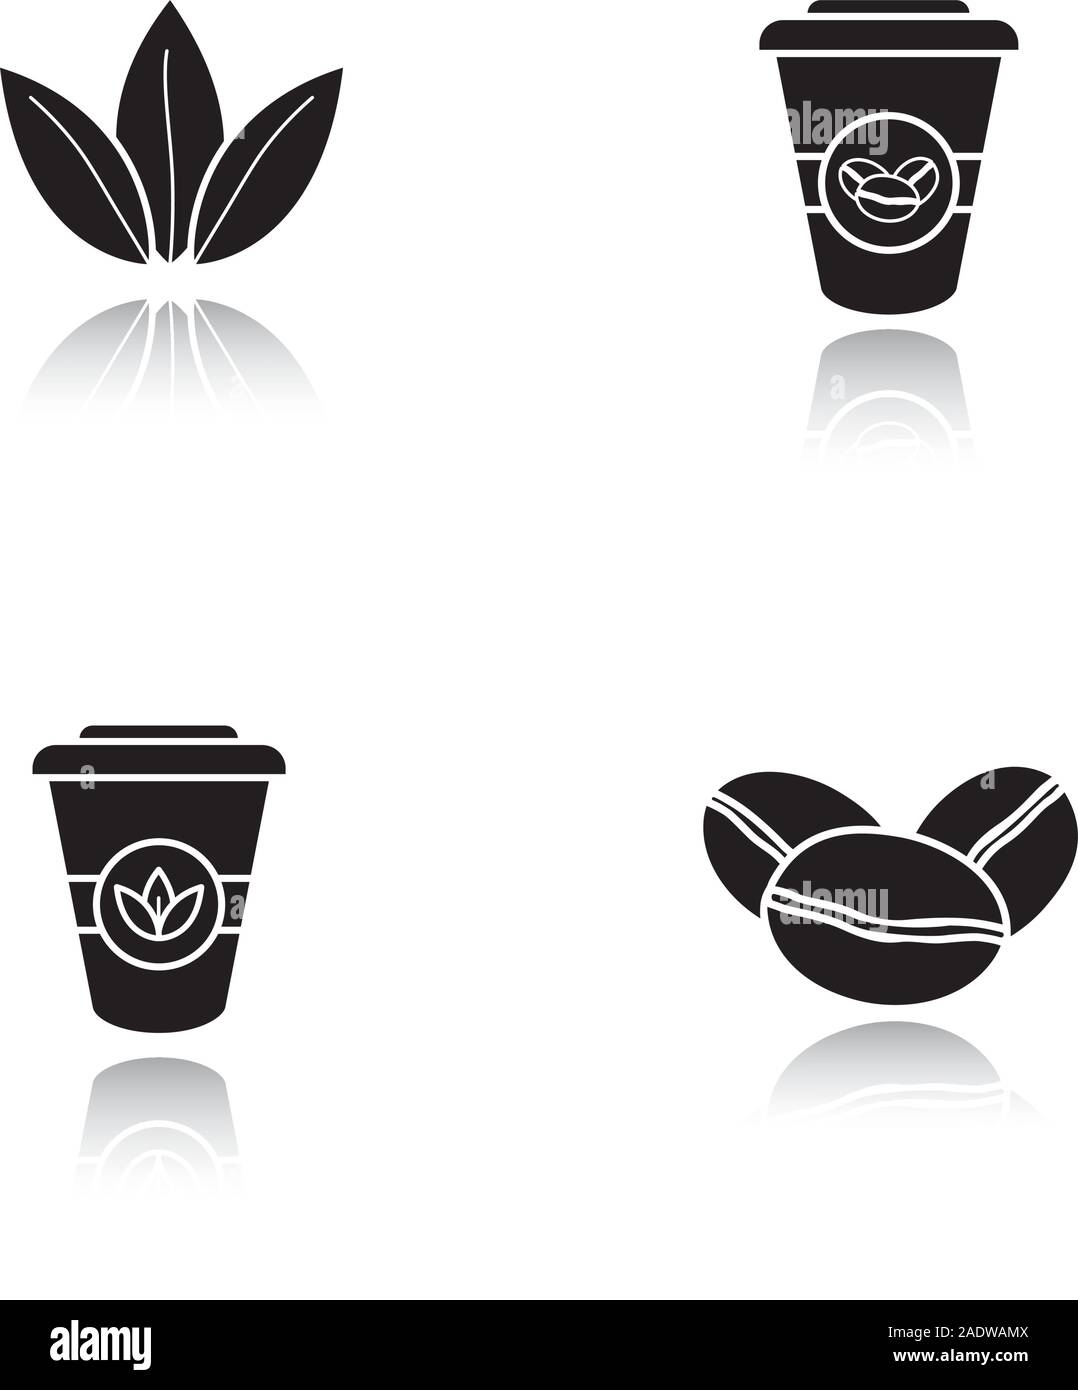 Bollitore per tè e caffè ombra nera set di icone. Caffè torrefatto in grani, foglie di tè e di carta monouso tazze. Isolato illustrazioni vettoriali Illustrazione Vettoriale